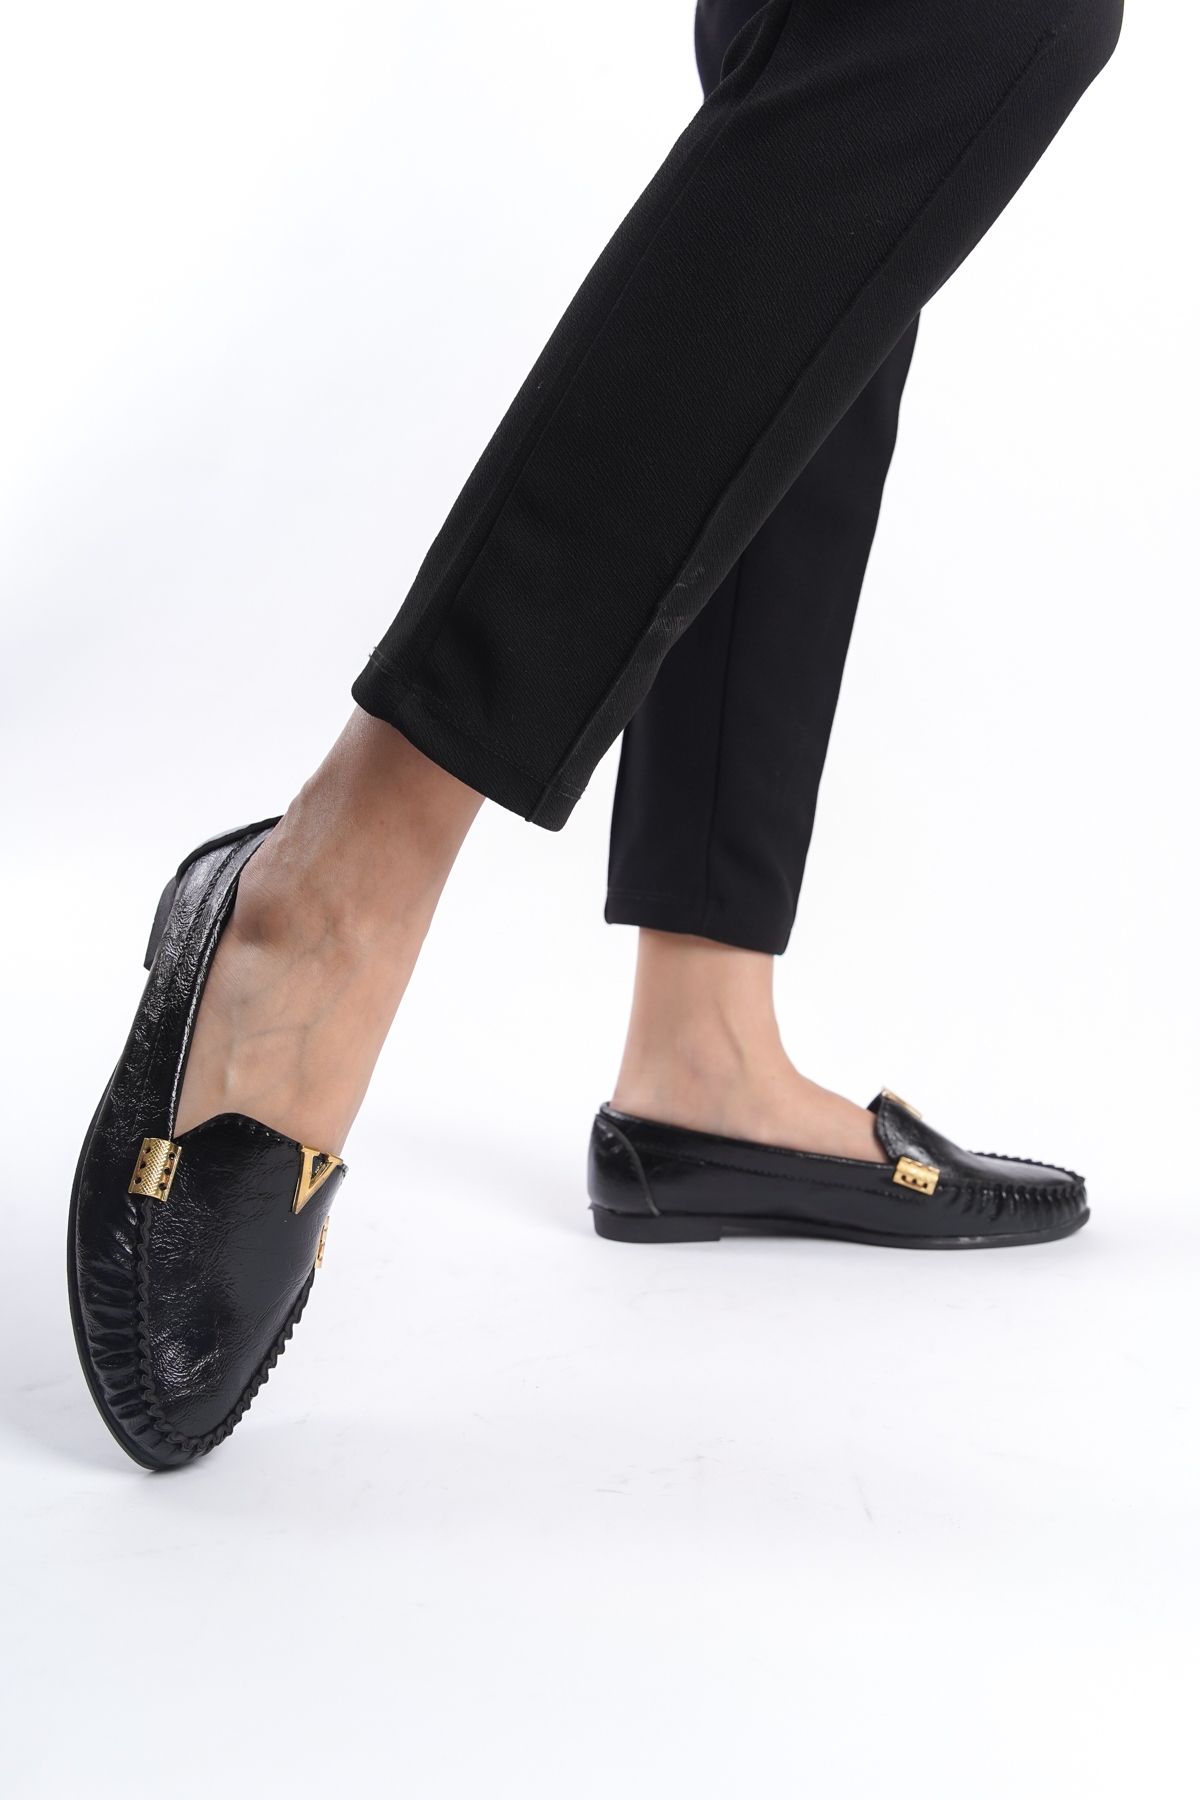 eformoda by emre yılmaz Siyah Kadın Günlük Rahat Tokalı Casual Klasik Ayakkabı Babet LRS01